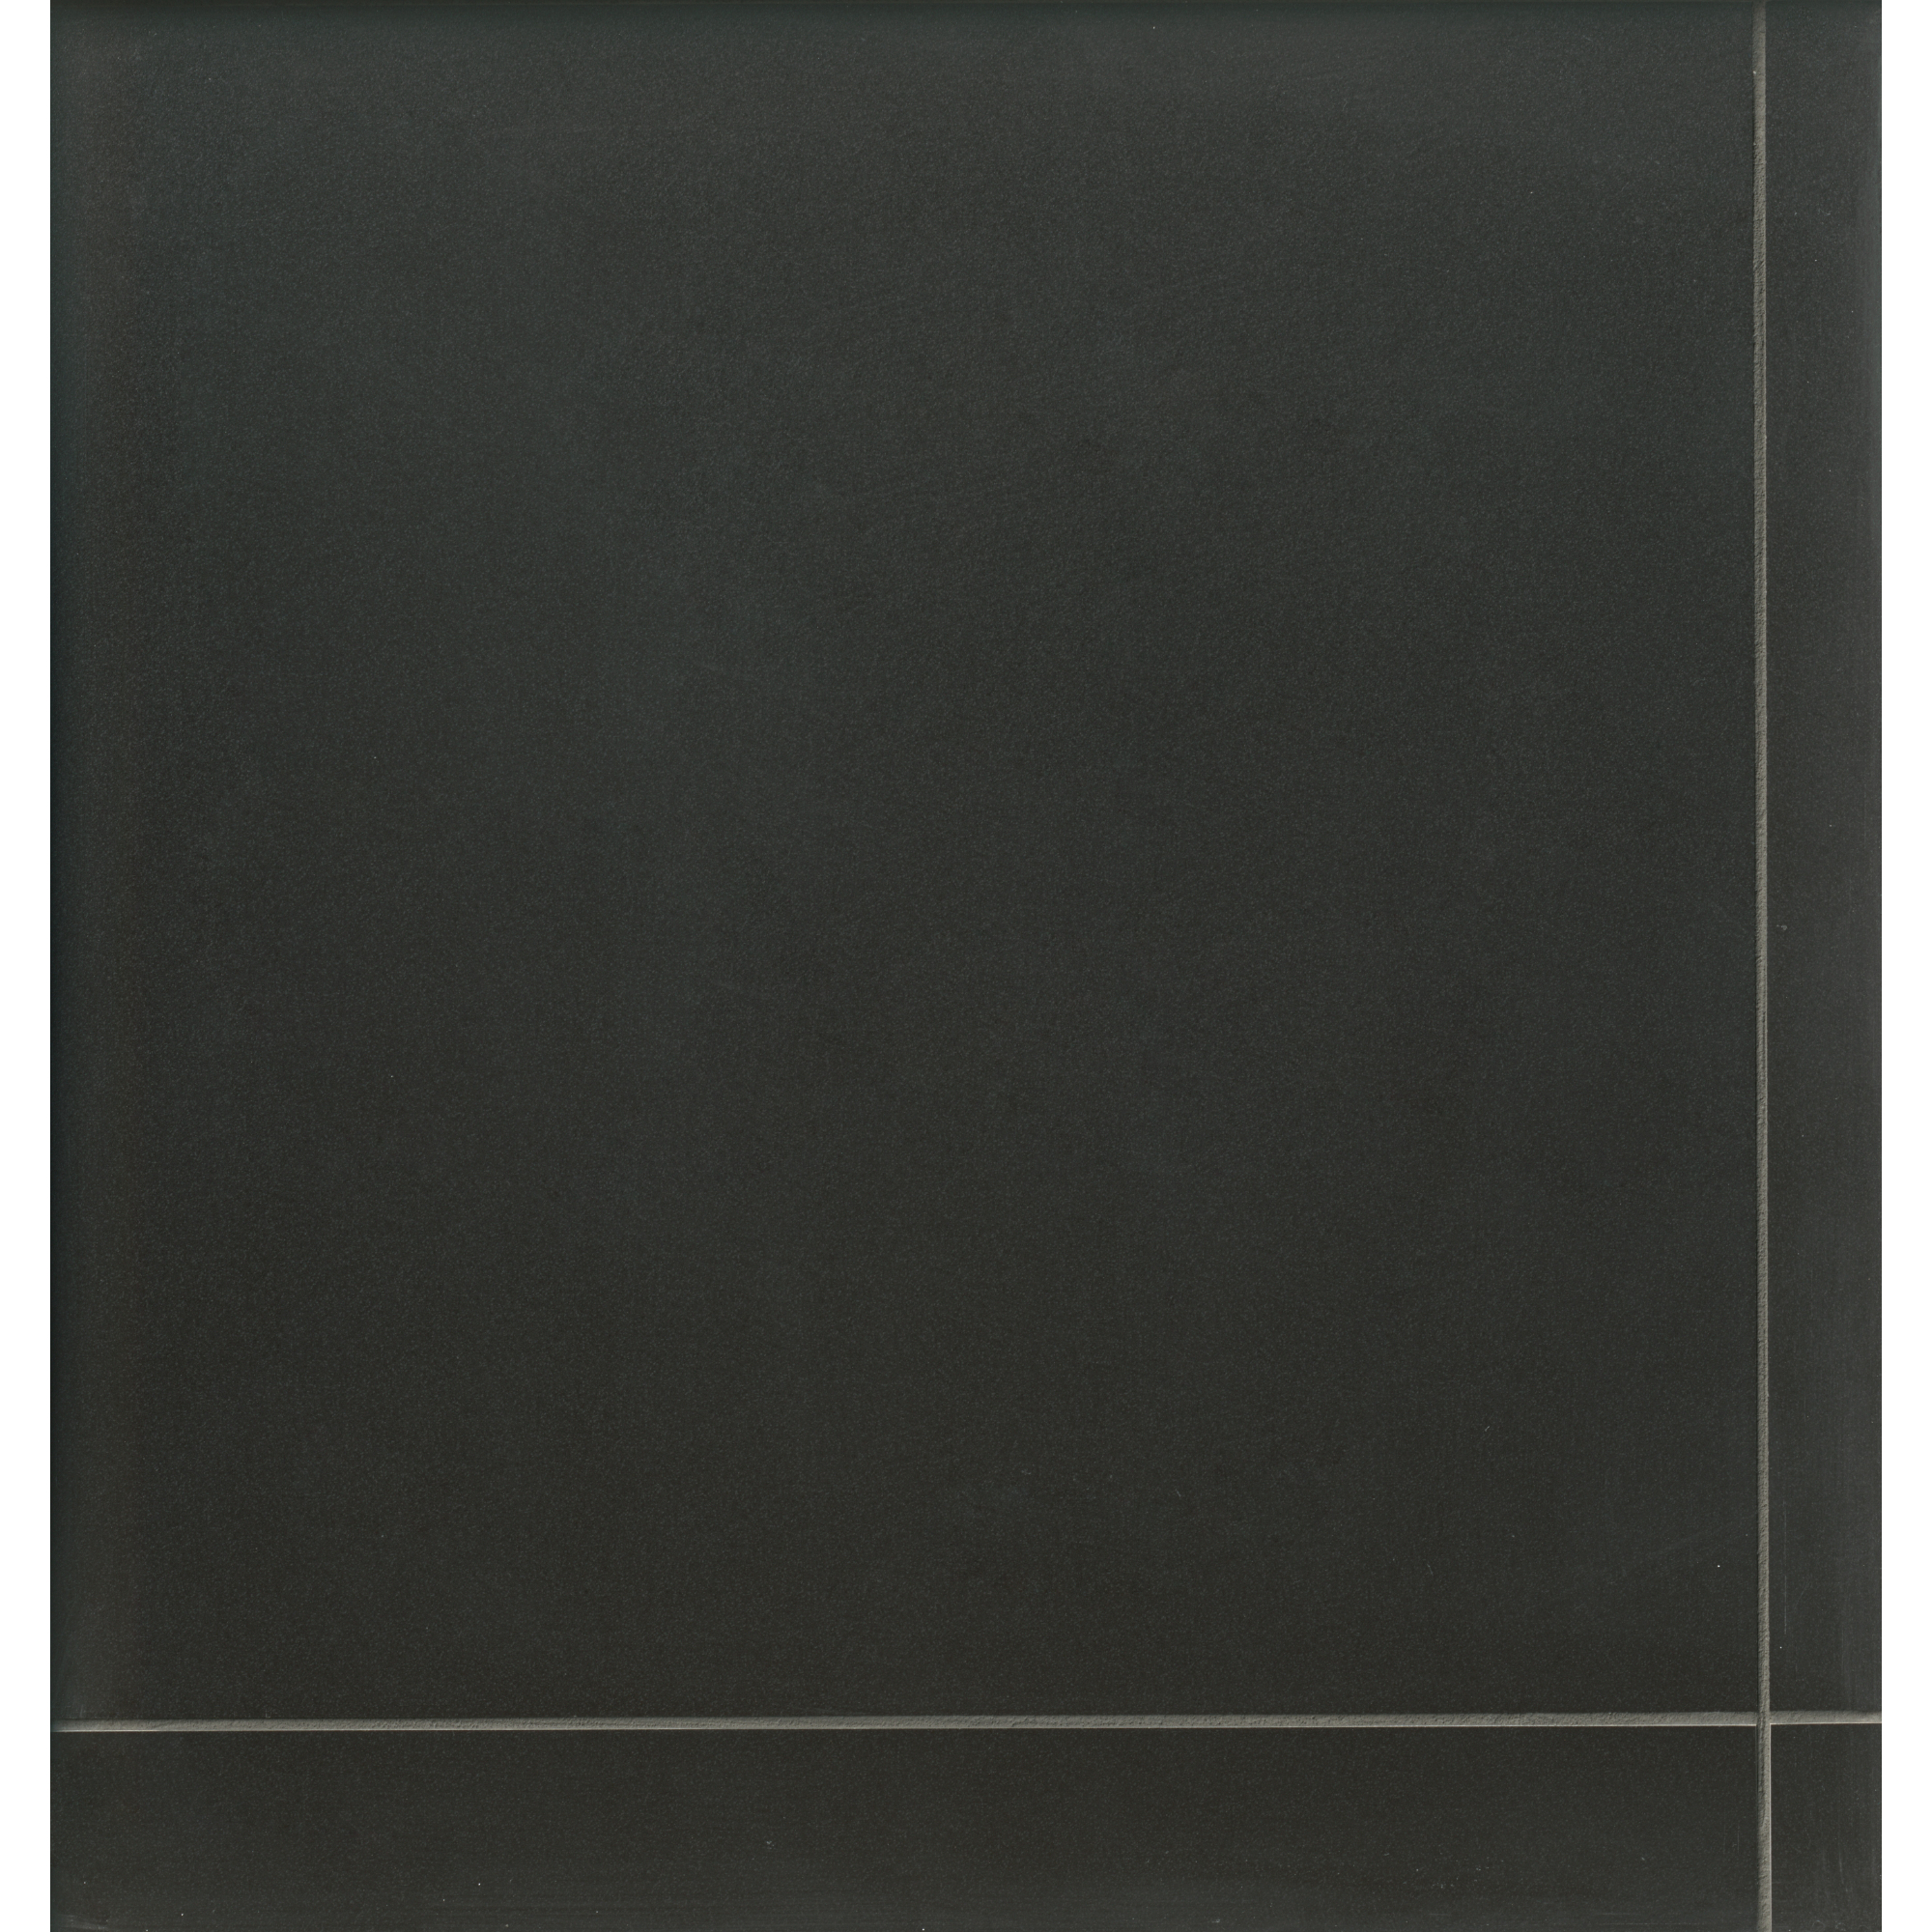 Colormatte Black 44x44cm